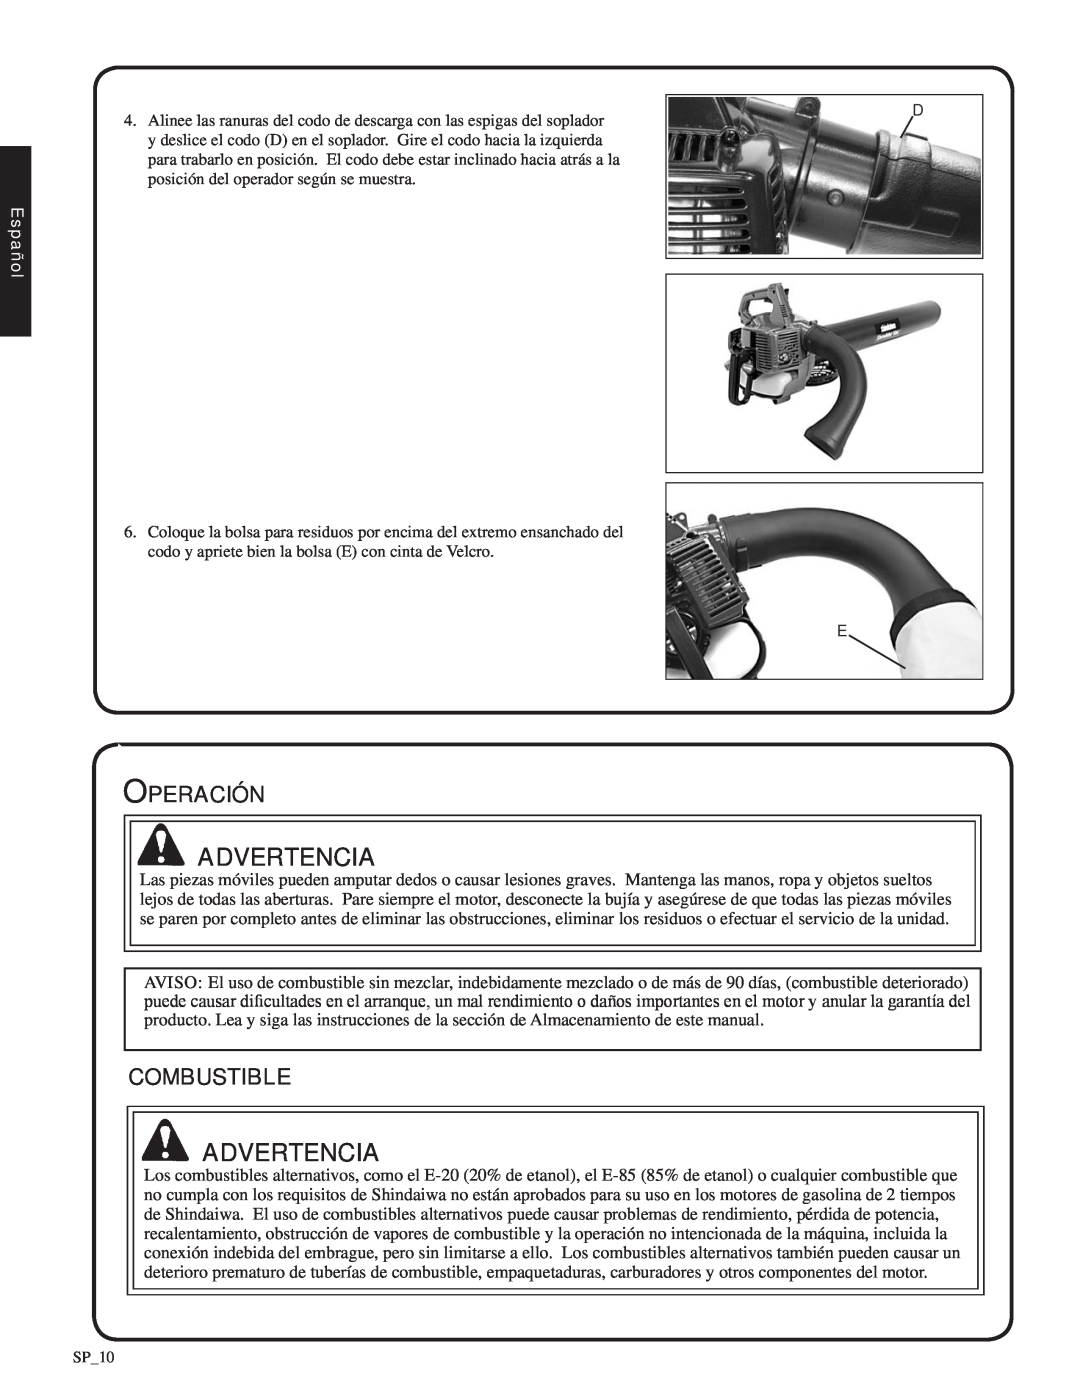 Shindaiwa SV212, 82052 manual Operación, combustible, Advertencia, Español 